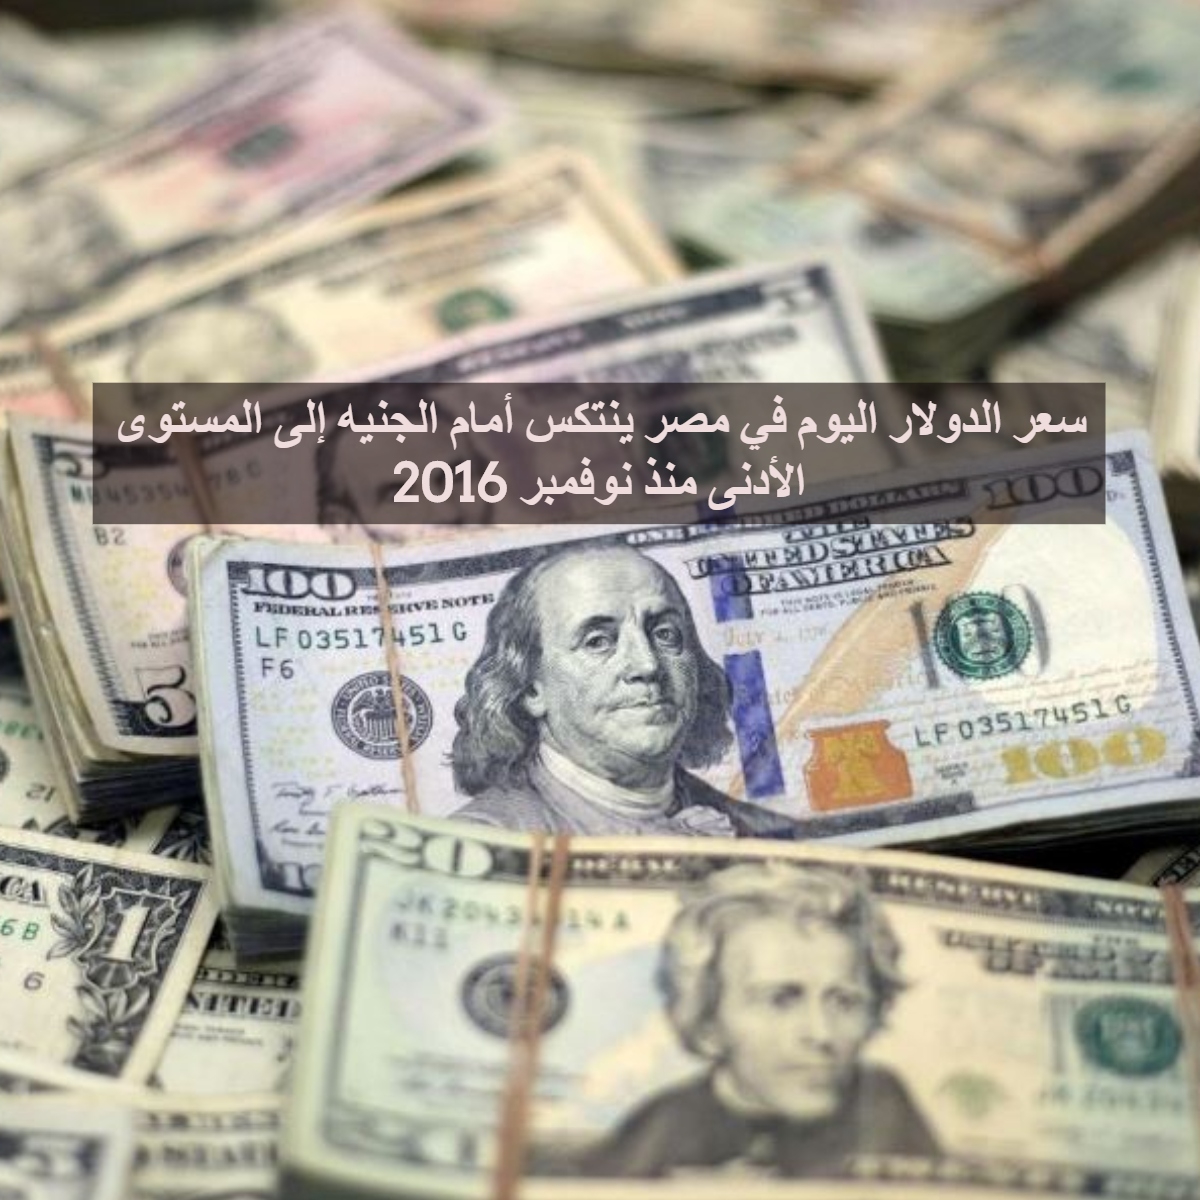 سعر الدولار اليوم في مصر ينتكس أمام الجنيه إلى المستوى الأدنى منذ نوفمبر 2016